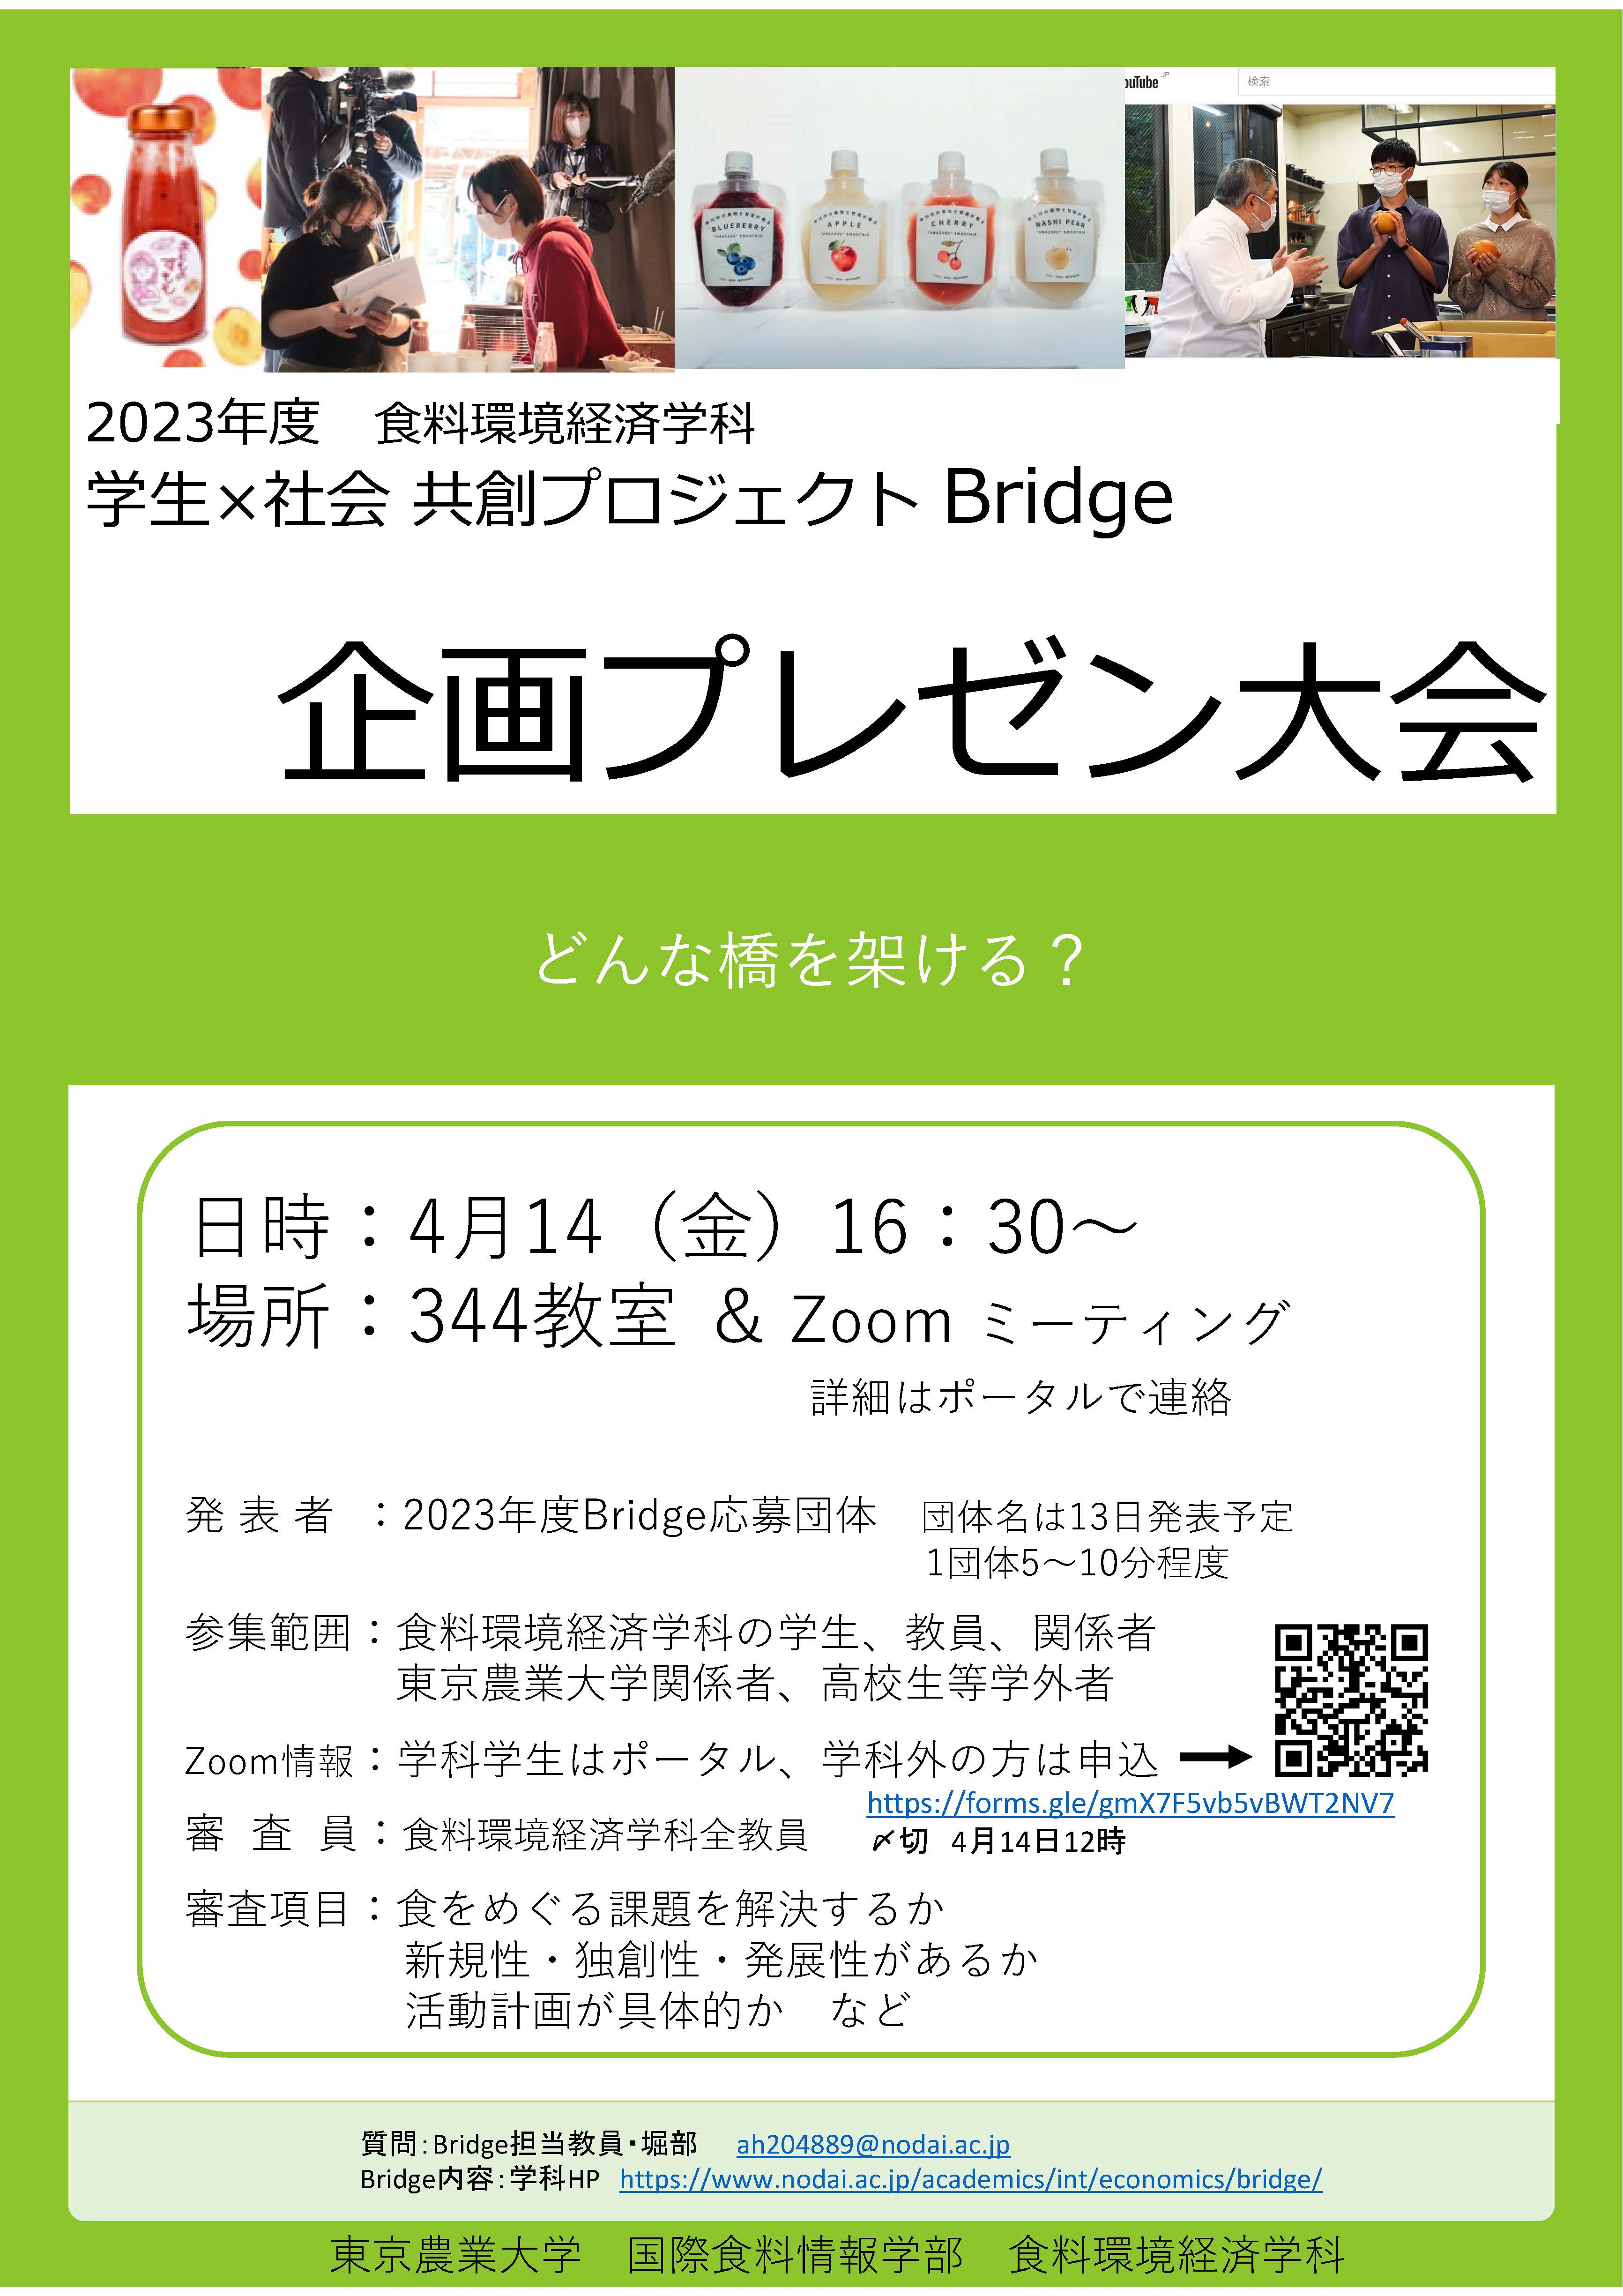 2023年度Bridge企画プレゼン大会のお知らせ